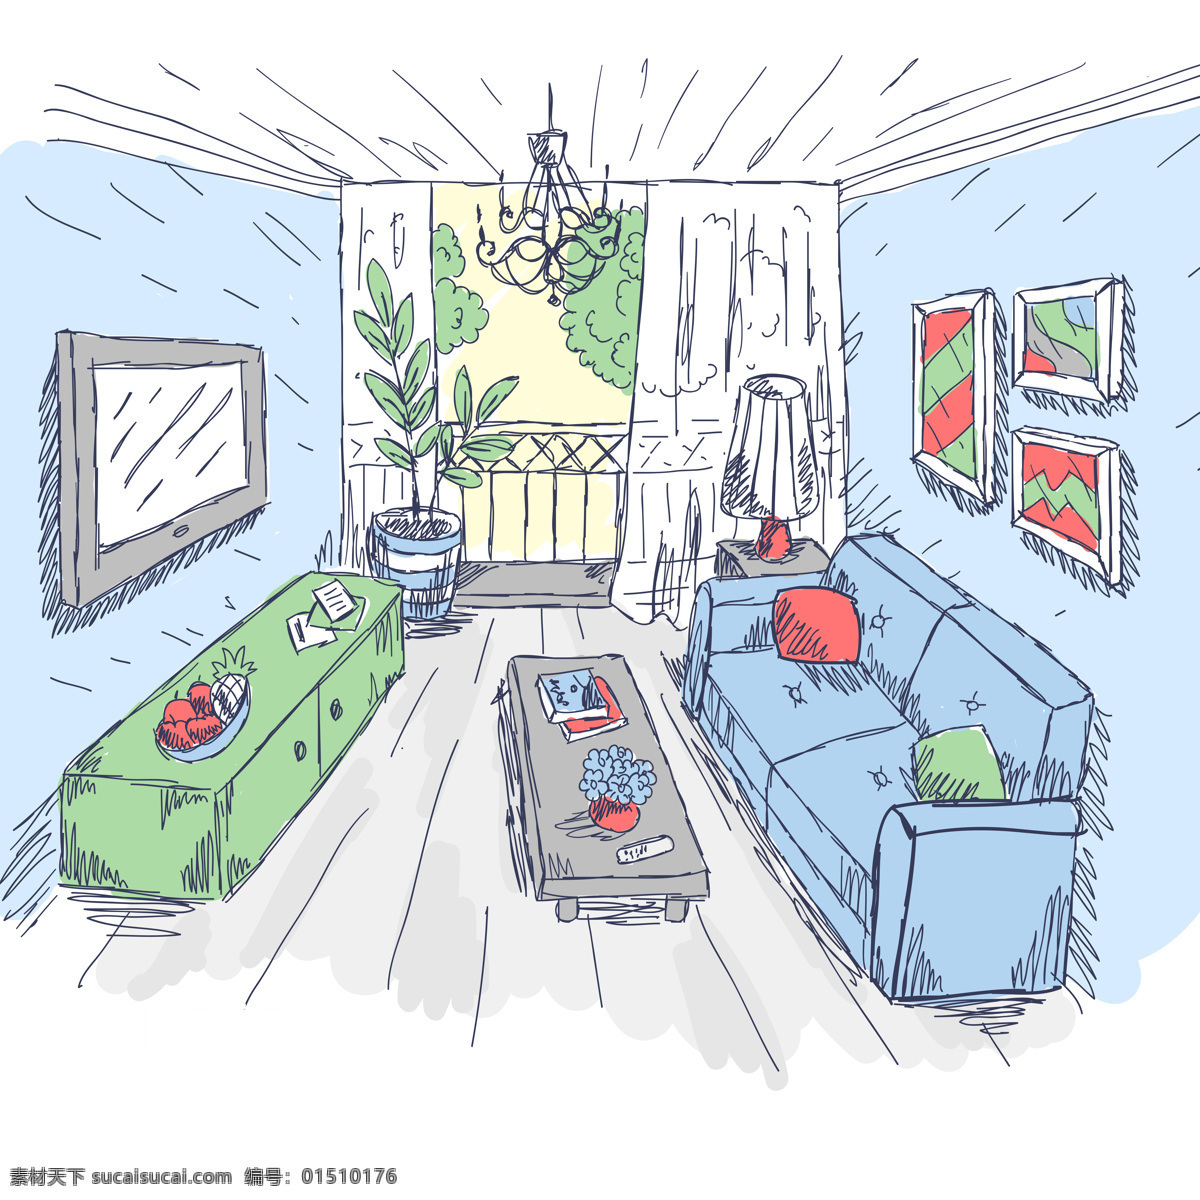 室内装修 素描画 卡通画 手绘 室内 家庭 沙发 茶几 电视 壁画 设计之家 动漫动画 风景漫画